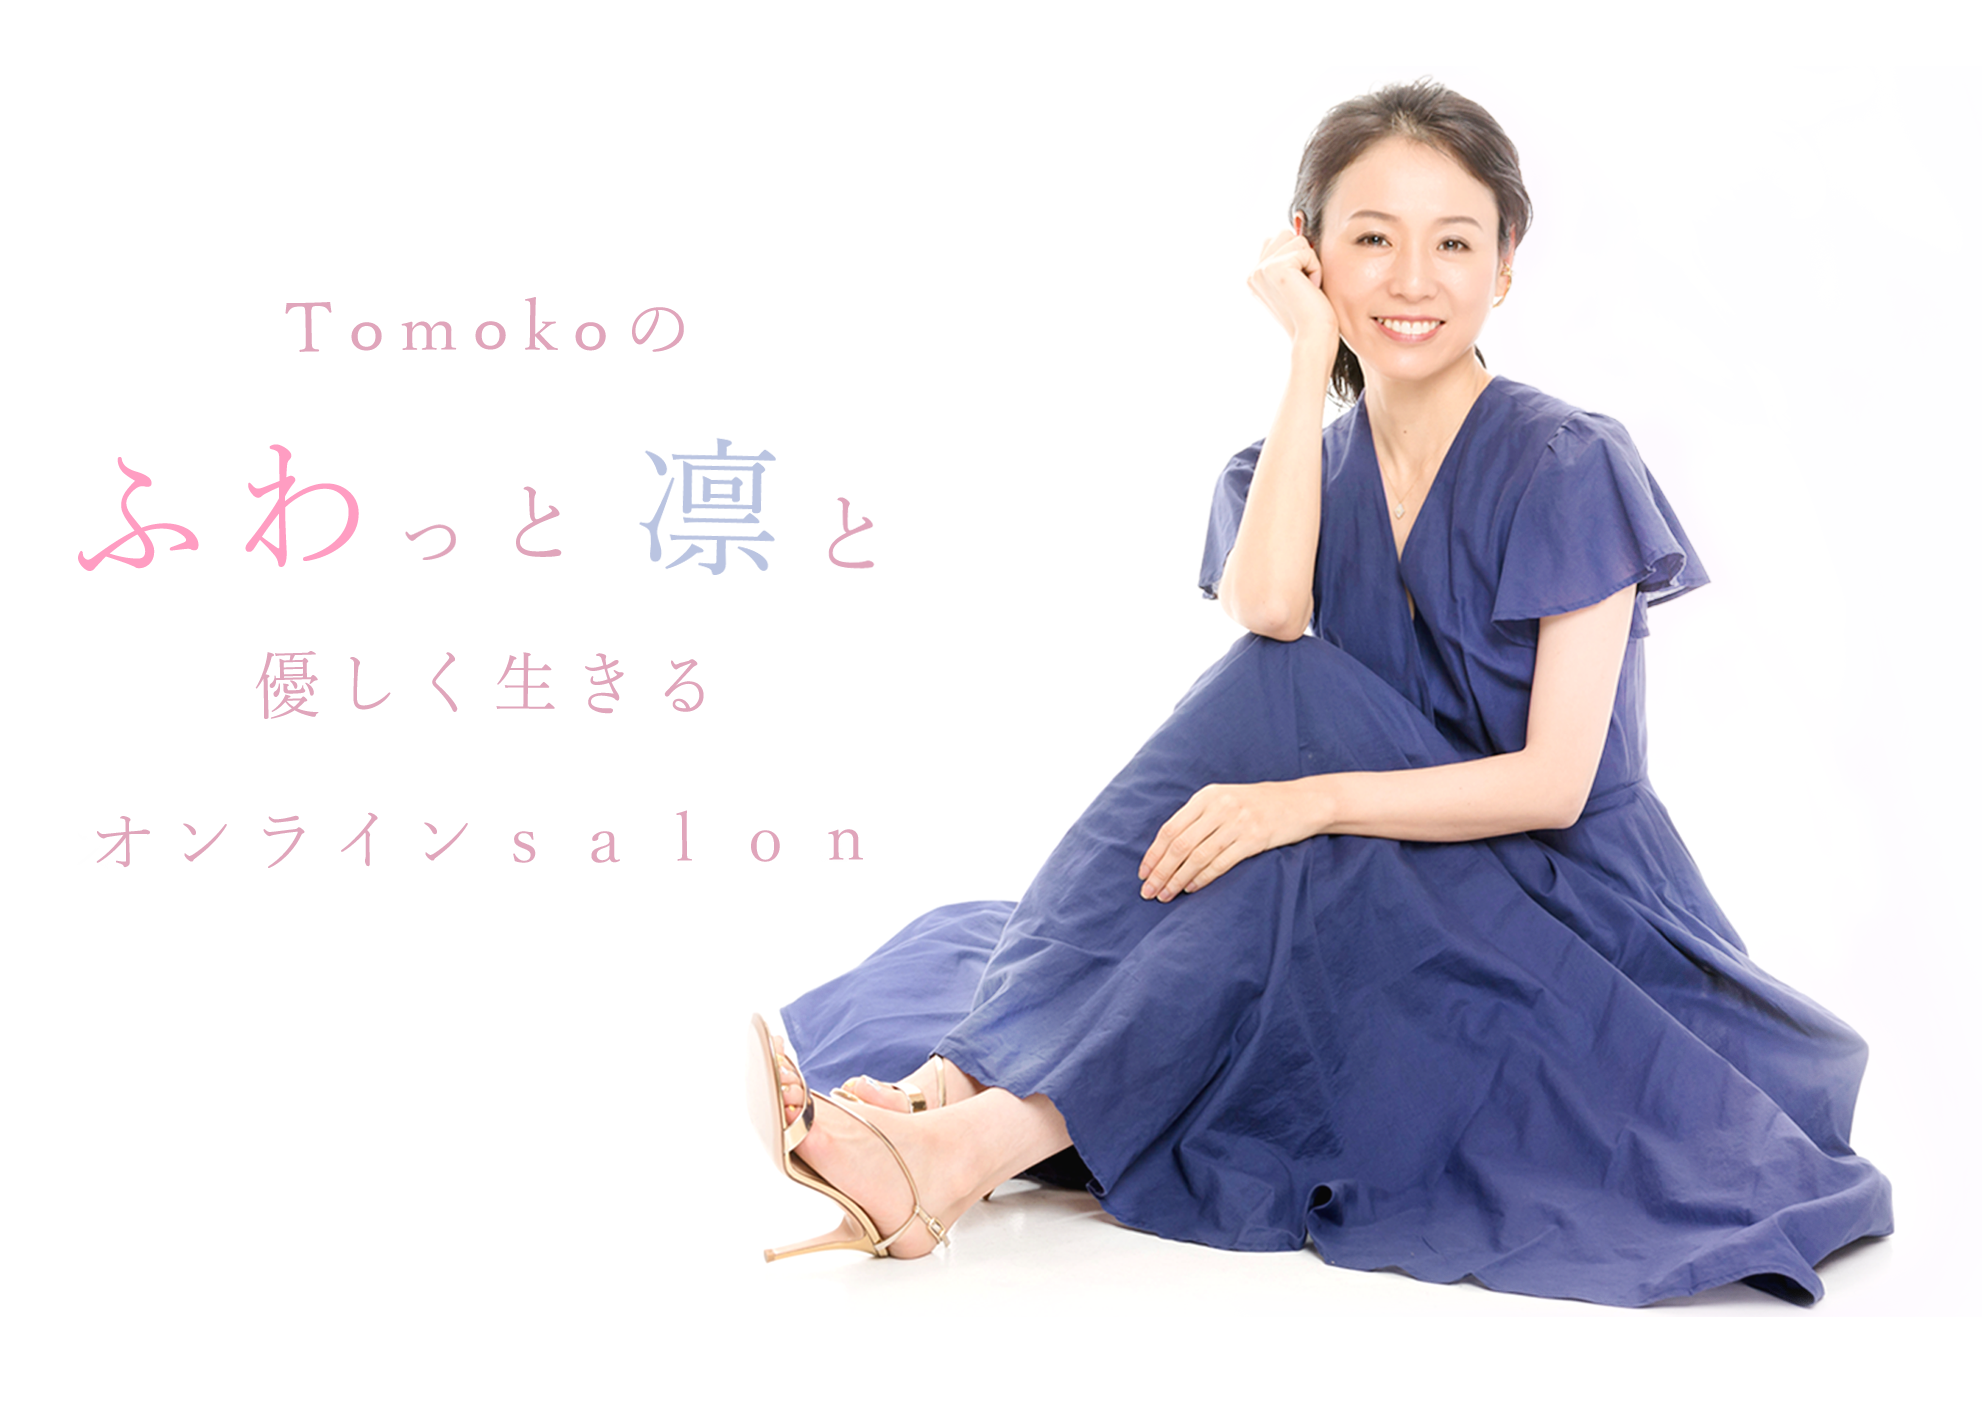 Tomokoのふわっと凛と優しく生きる
オンラインサロン
自分を幸せにするヨガクラスKATA YOGA
を主宰するTomokoのオンラインサロンです
